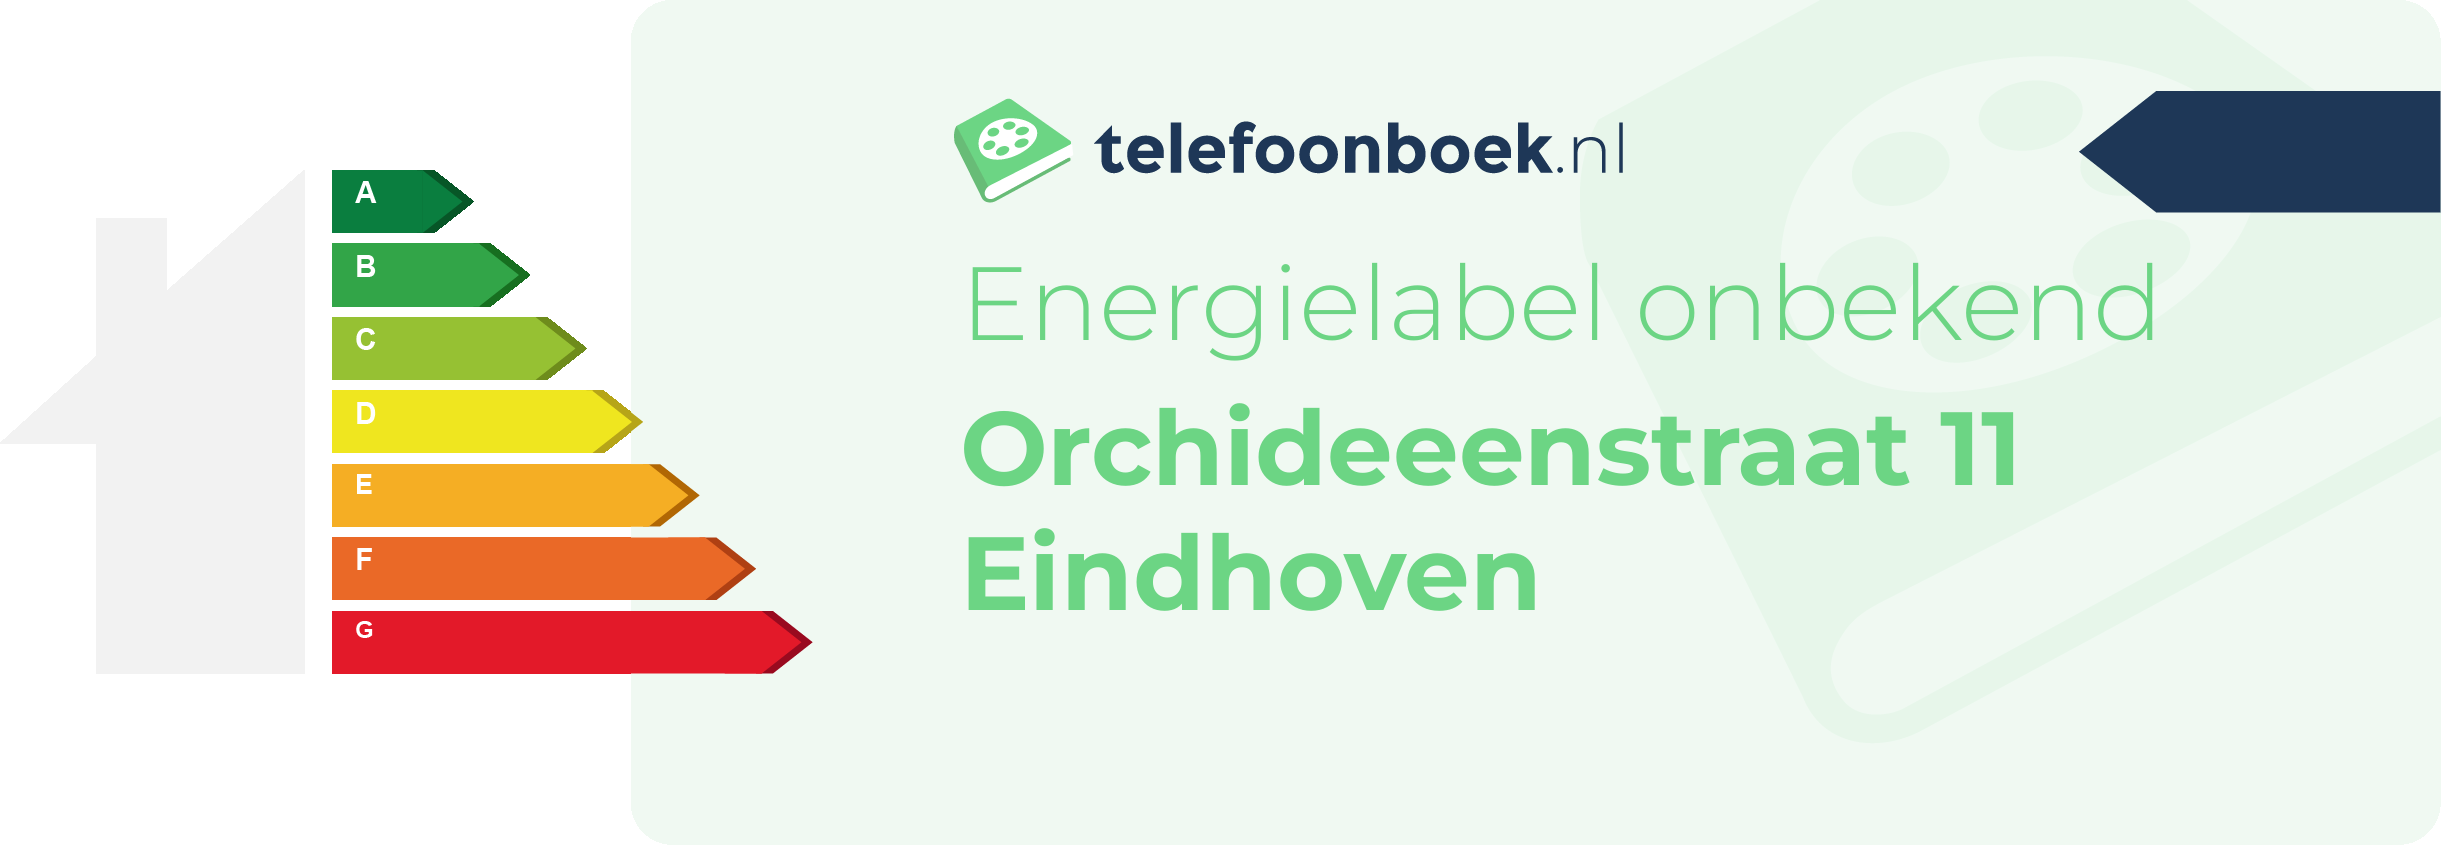 Energielabel Orchideeenstraat 11 Eindhoven